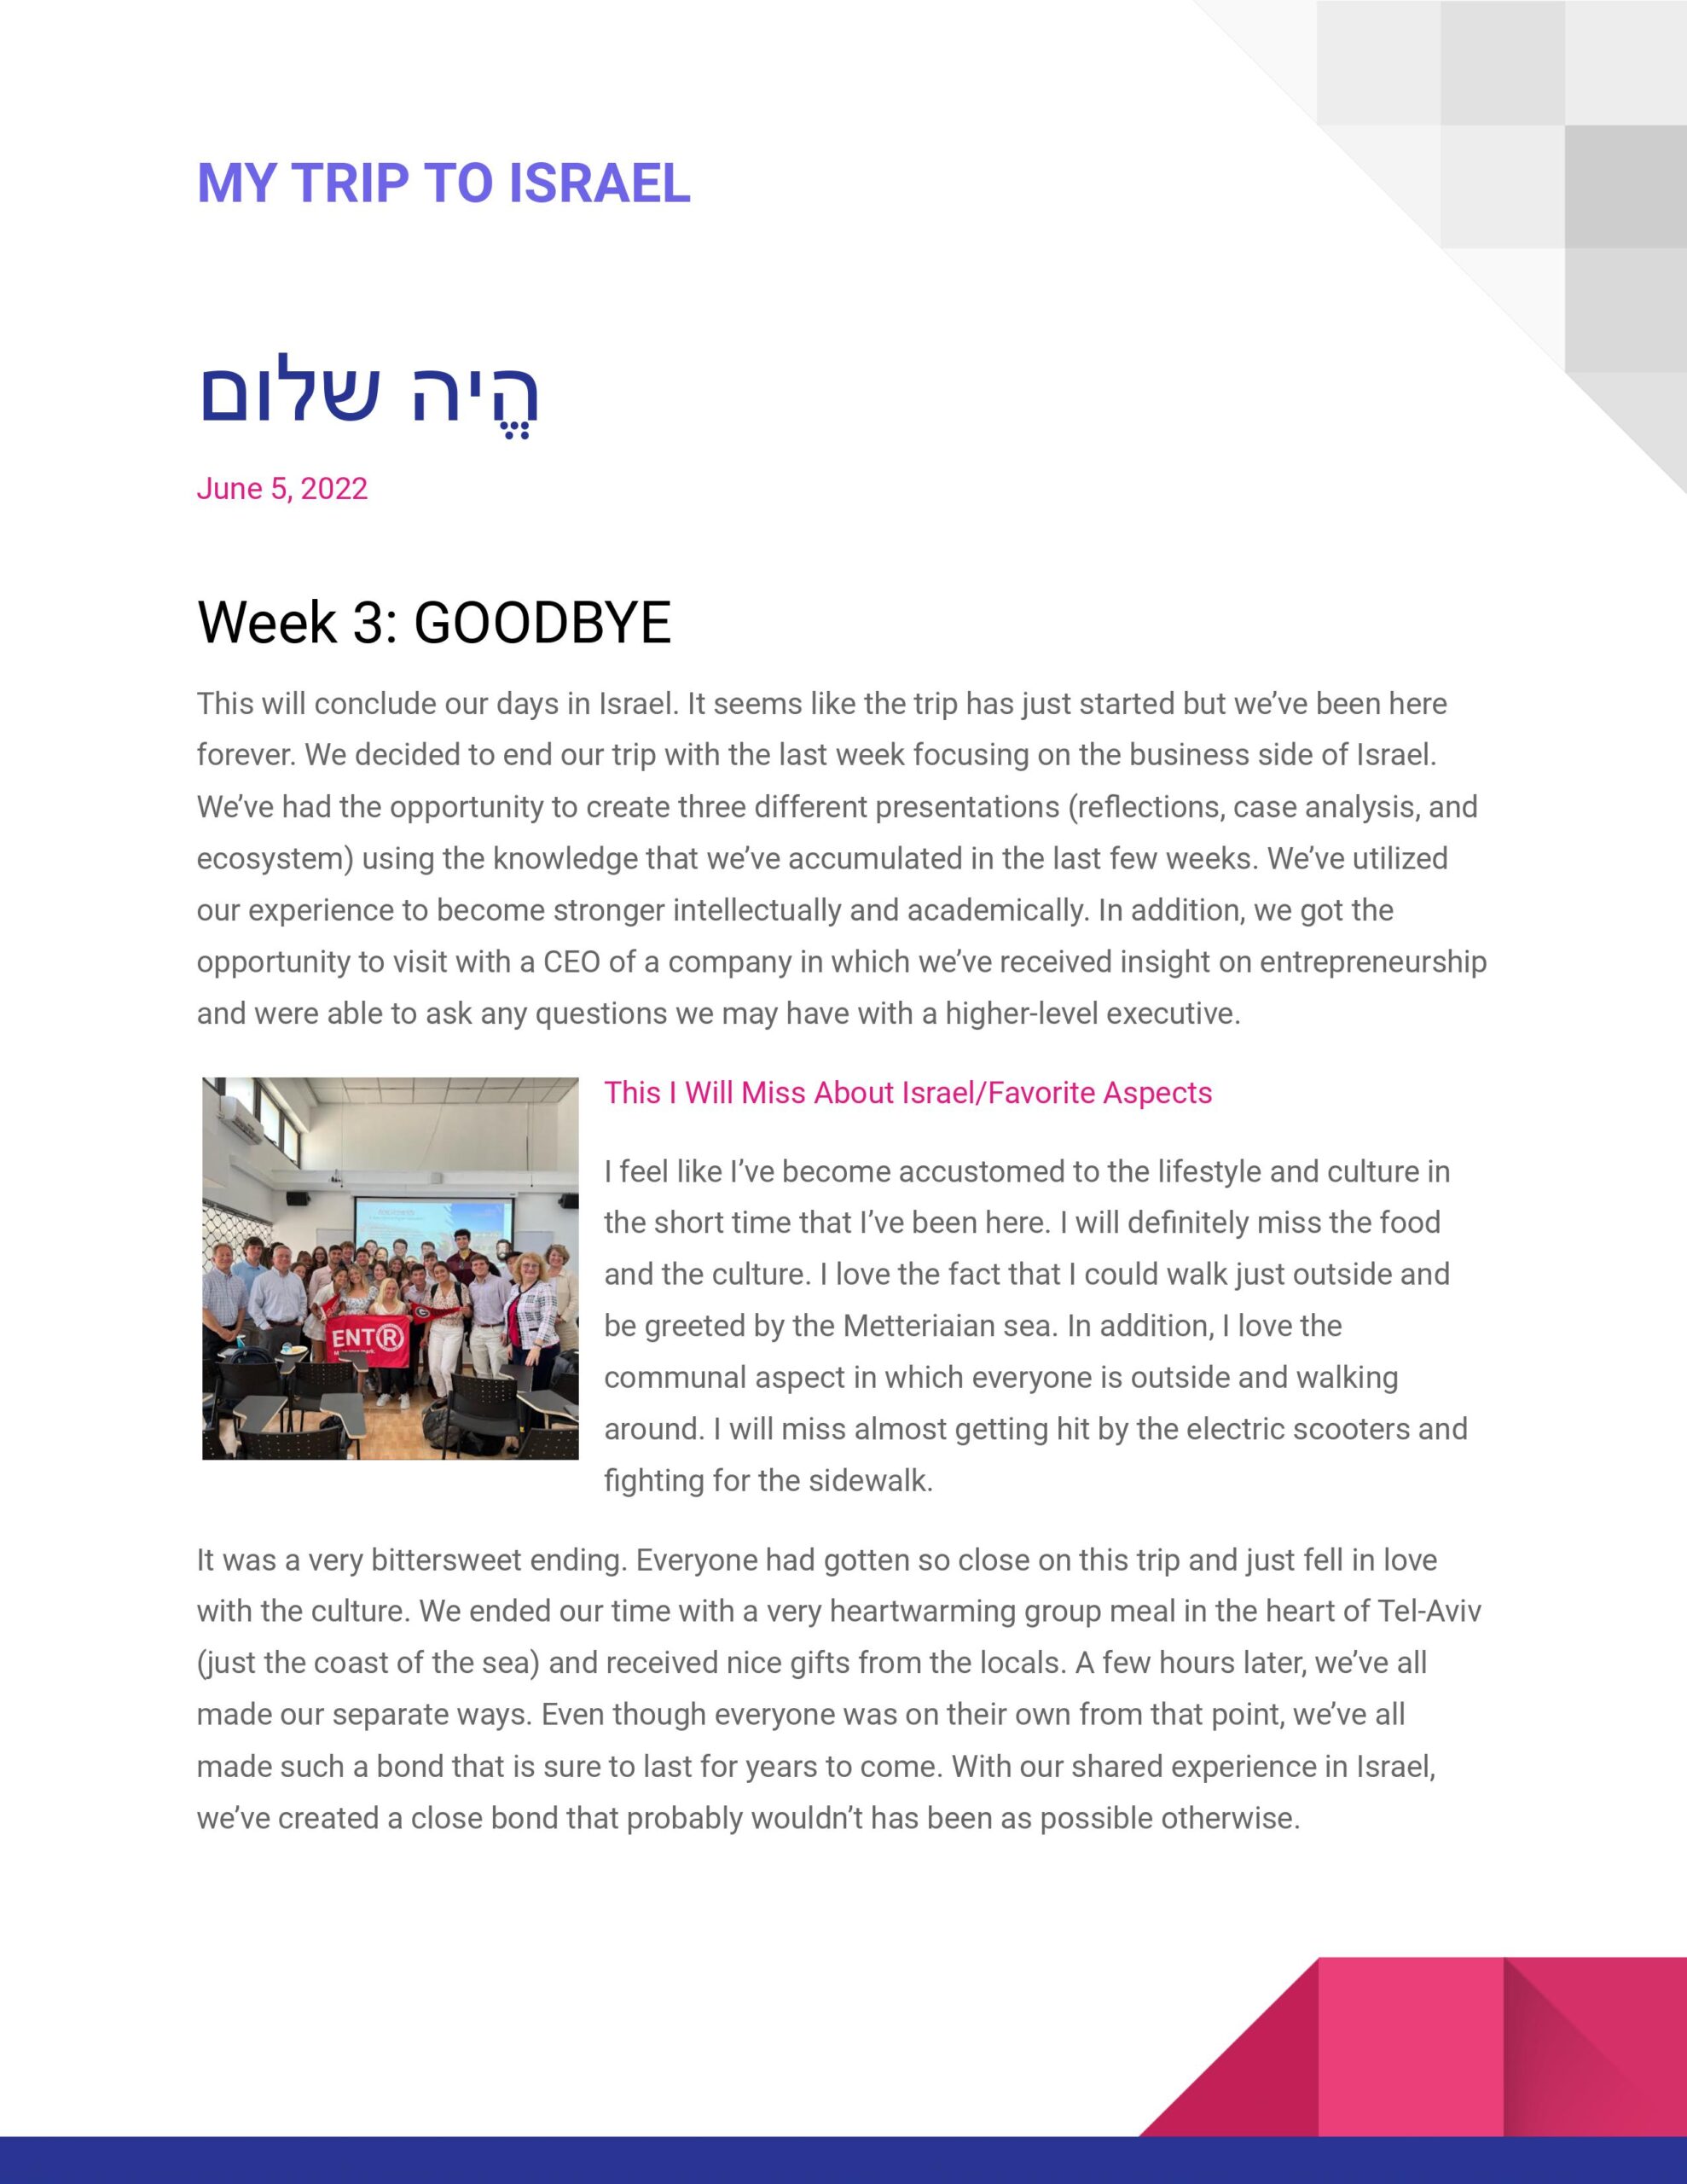 Israel Blog 4#- Week 3